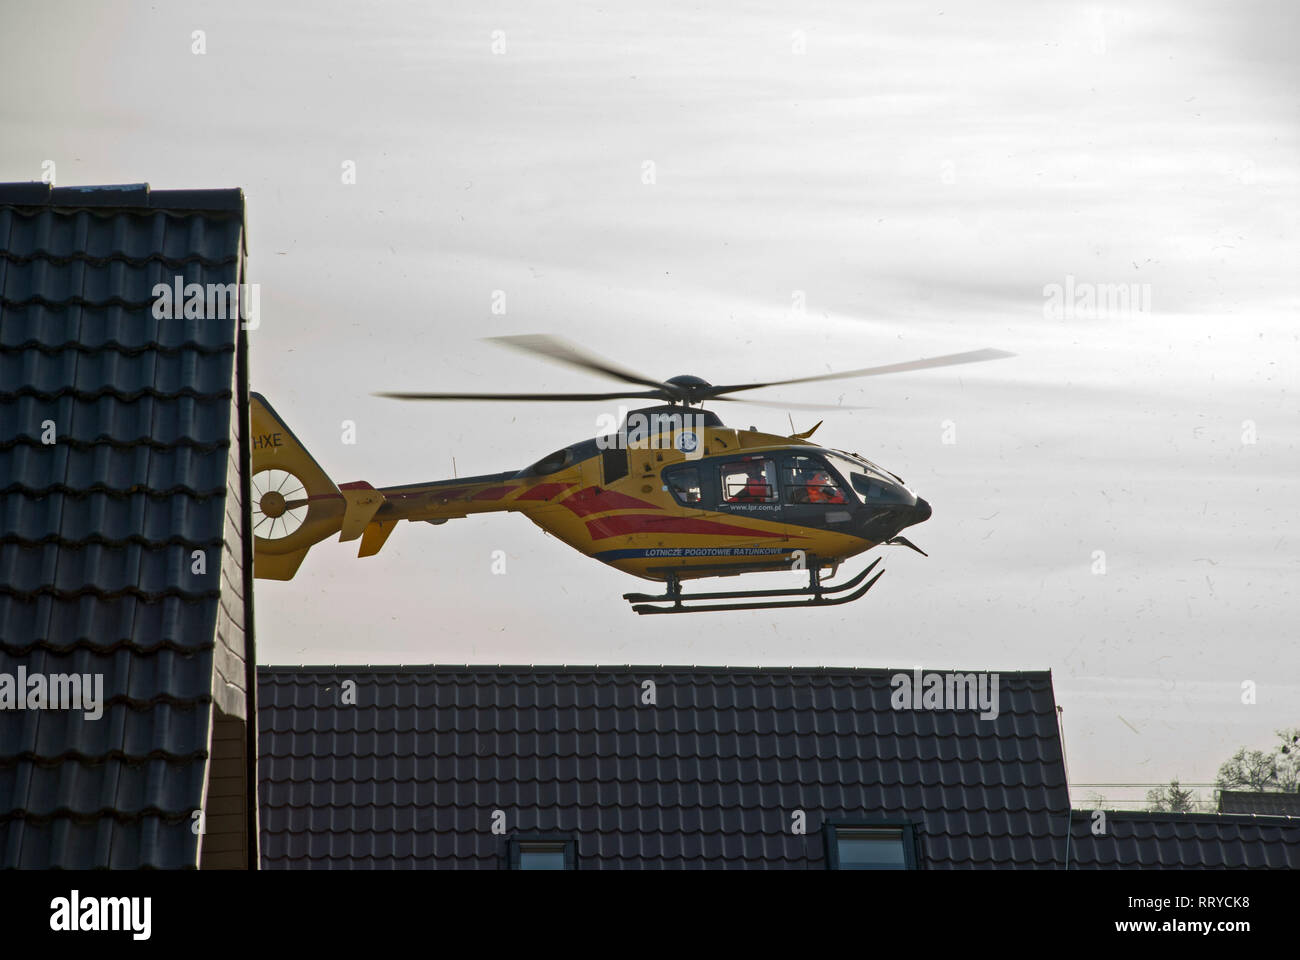 Elicottero del polacco Medical Air Rescue - Lotnicze Pogotowie Ratunkowe. L'elicottero si avvia - sorge sopra i tetti di abitazioni monofamiliari. Foto Stock